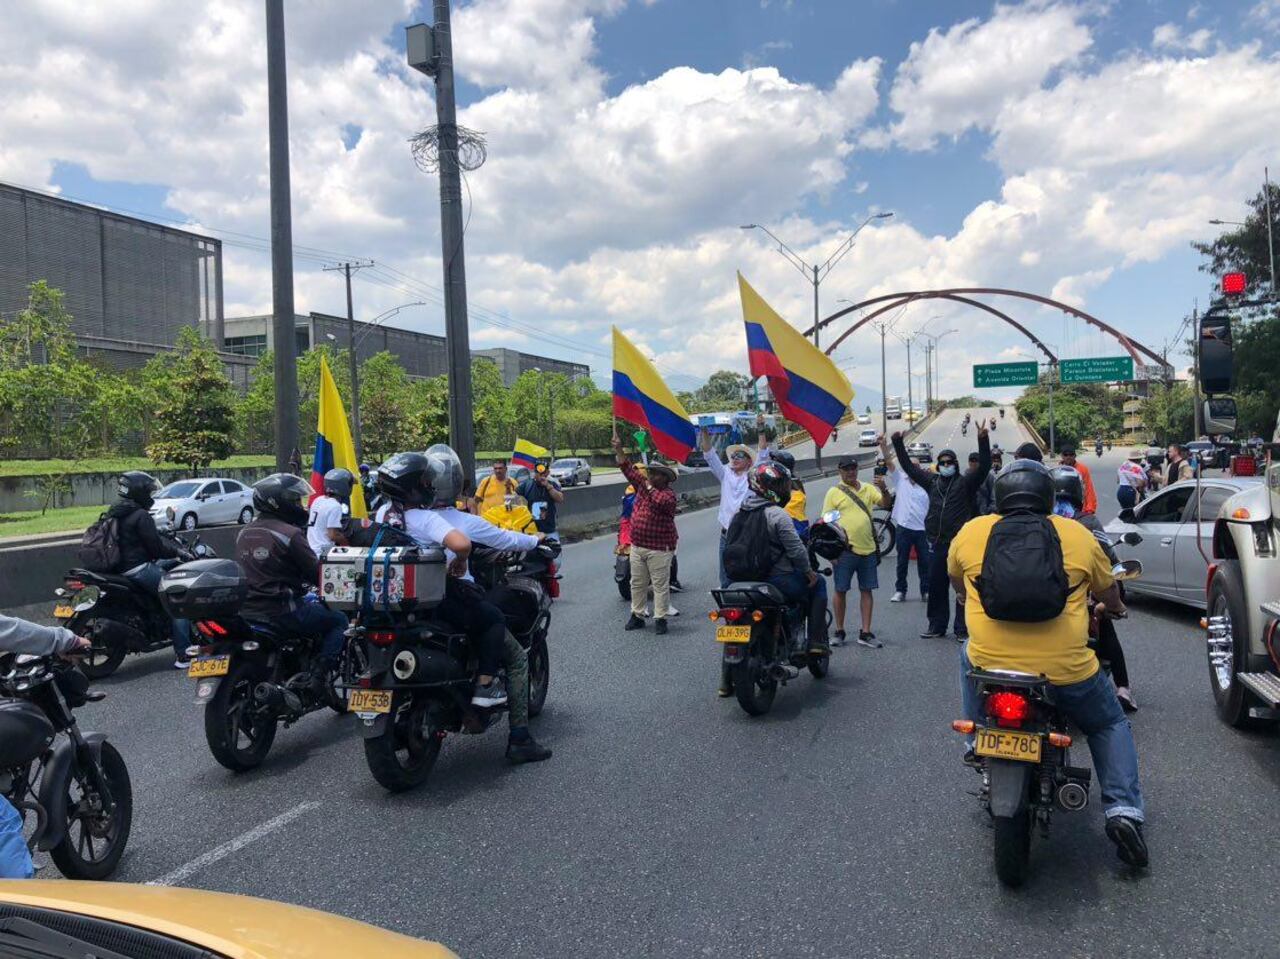 Continúa el cierre intermitente sobre la autopista Norte de Medellín, en las inmediaciones del búnker de la Fiscalía. Hace presencia la Policía Nacional y el Ministerio Público.